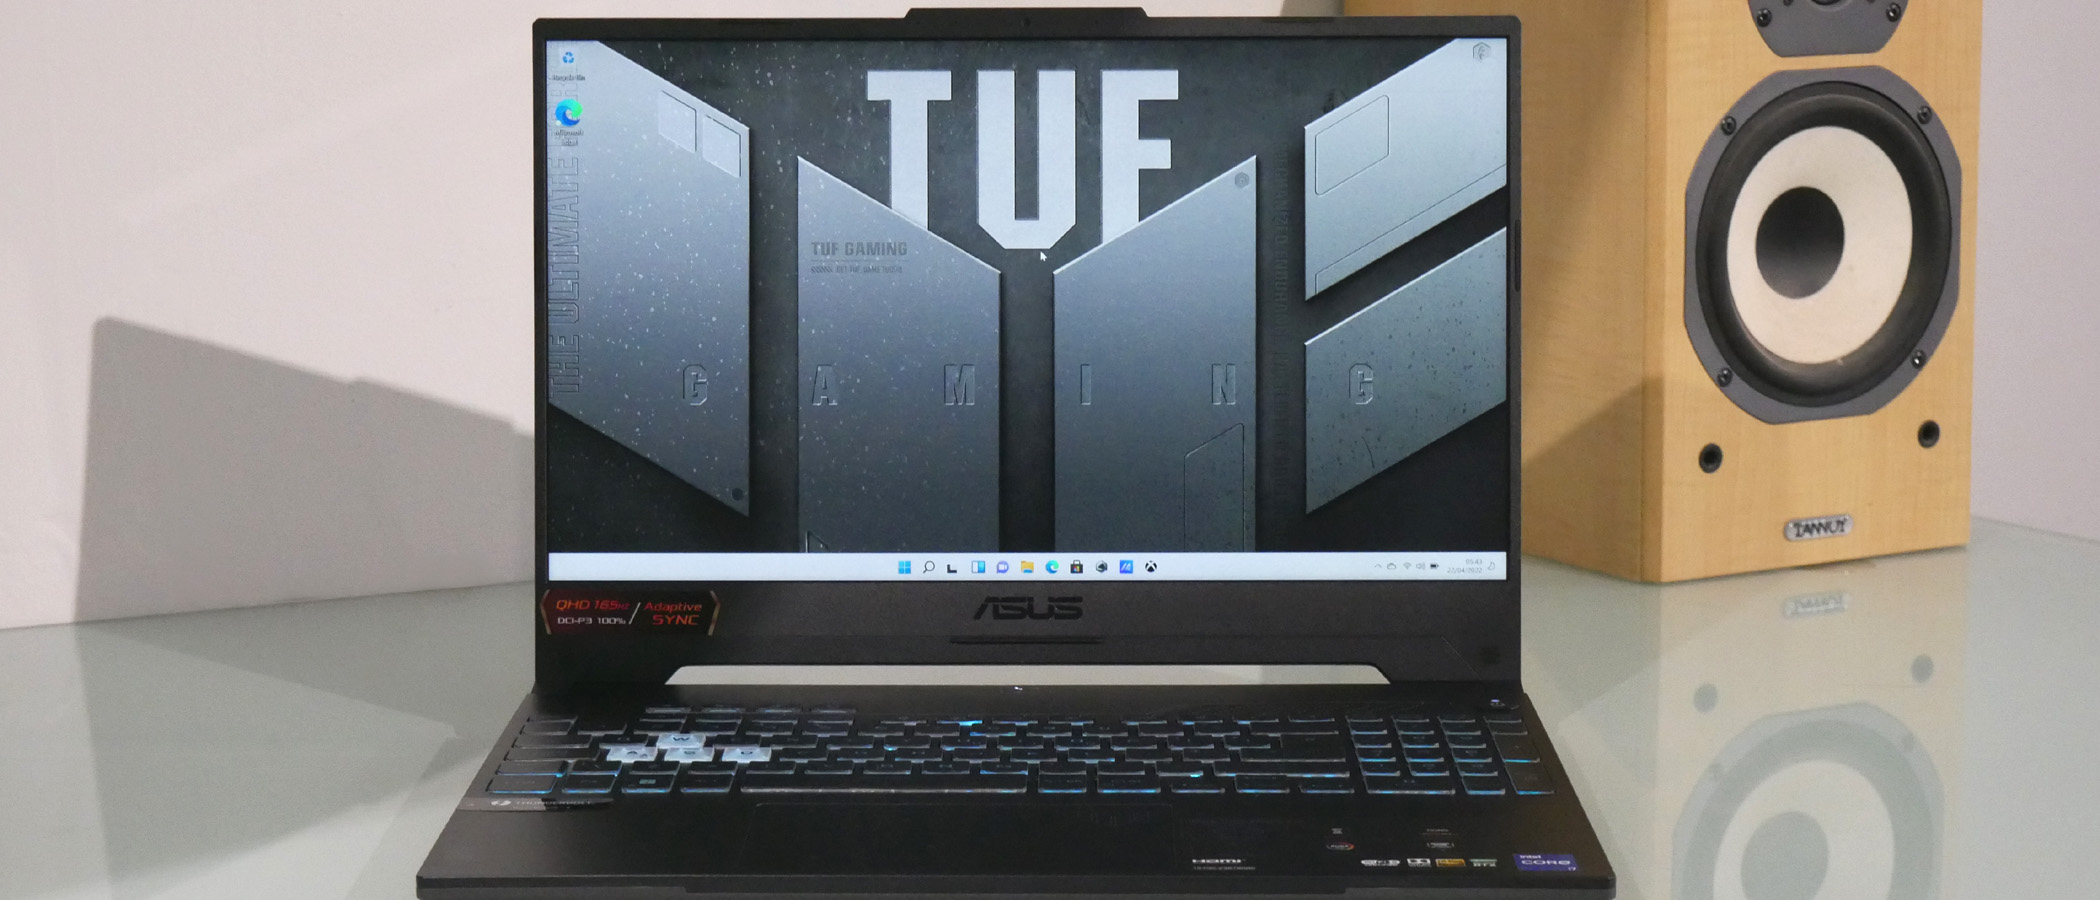 Trải nghiệm chơi game hoàn hảo với Asus TUF Gaming F15 (2022) - laptop gaming đỉnh cao. Thiết kế mạnh mẽ, hiệu suất tối đa cho phép bạn đánh bại mọi đối thủ một cách dễ dàng. Được trang bị bộ vi xử lý Intel thế hệ mới nhất và card đồ họa NVIDIA GeForce RTX, Asus TUF Gaming F15 sẽ đem đến trải nghiệm gaming mượt mà, hấp dẫn nhất cho bạn.